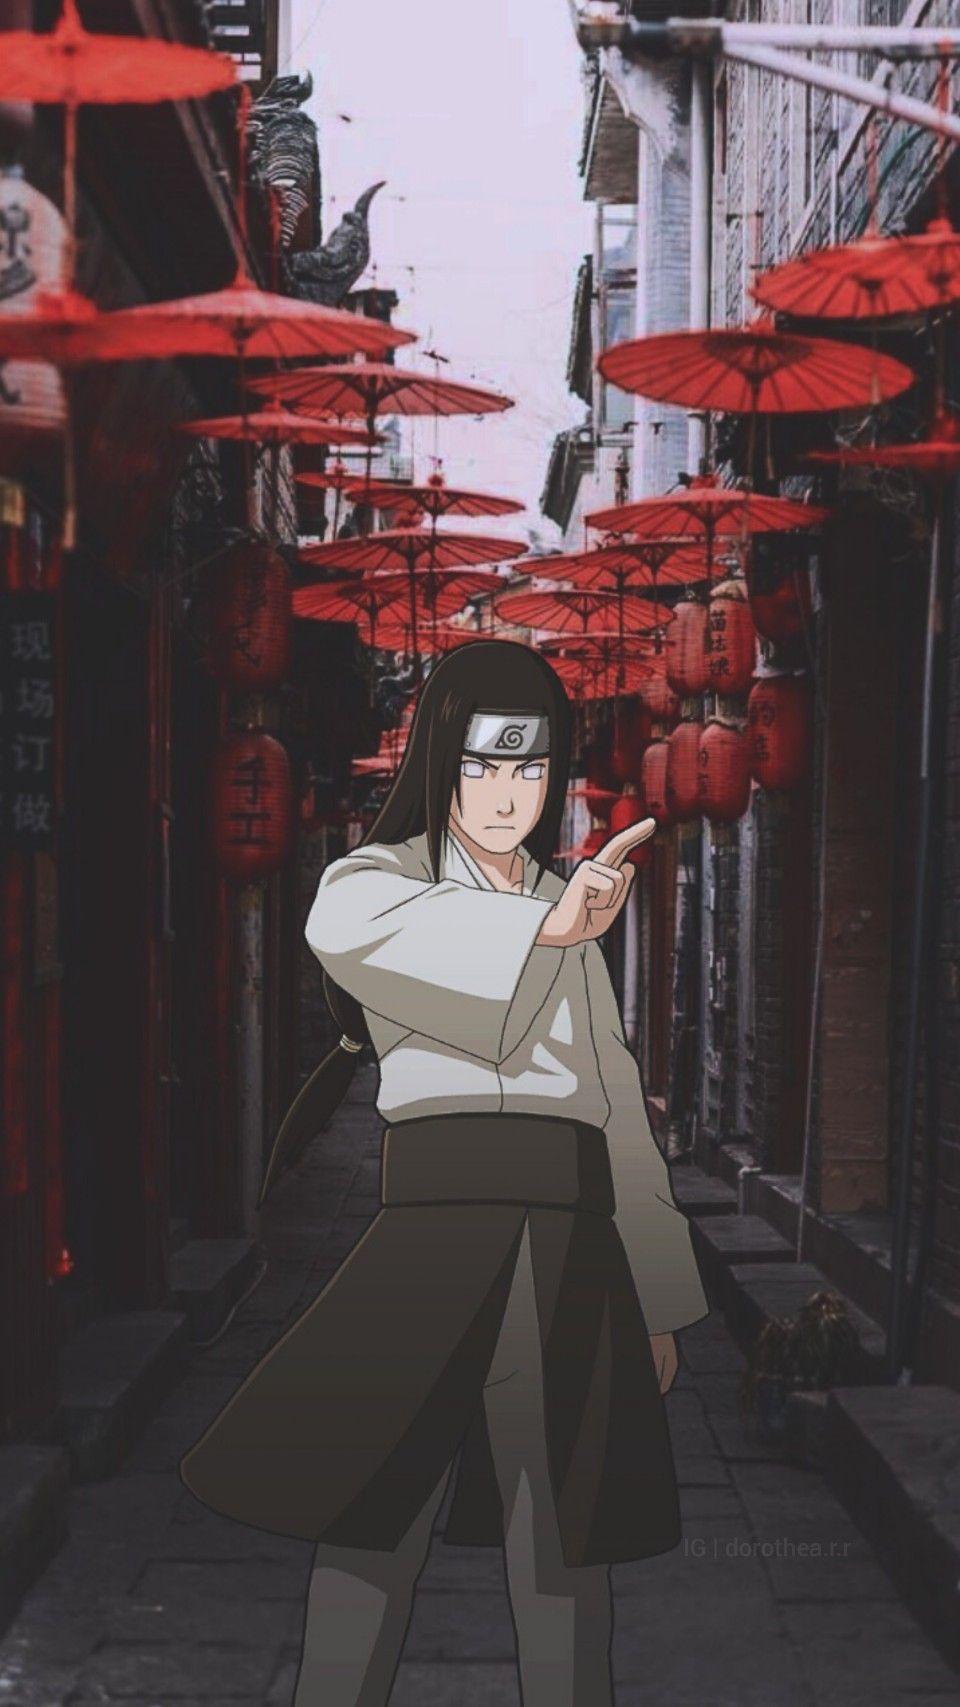 HD desktop wallpaper Anime Naruto Neji Hyūga download free picture  462256